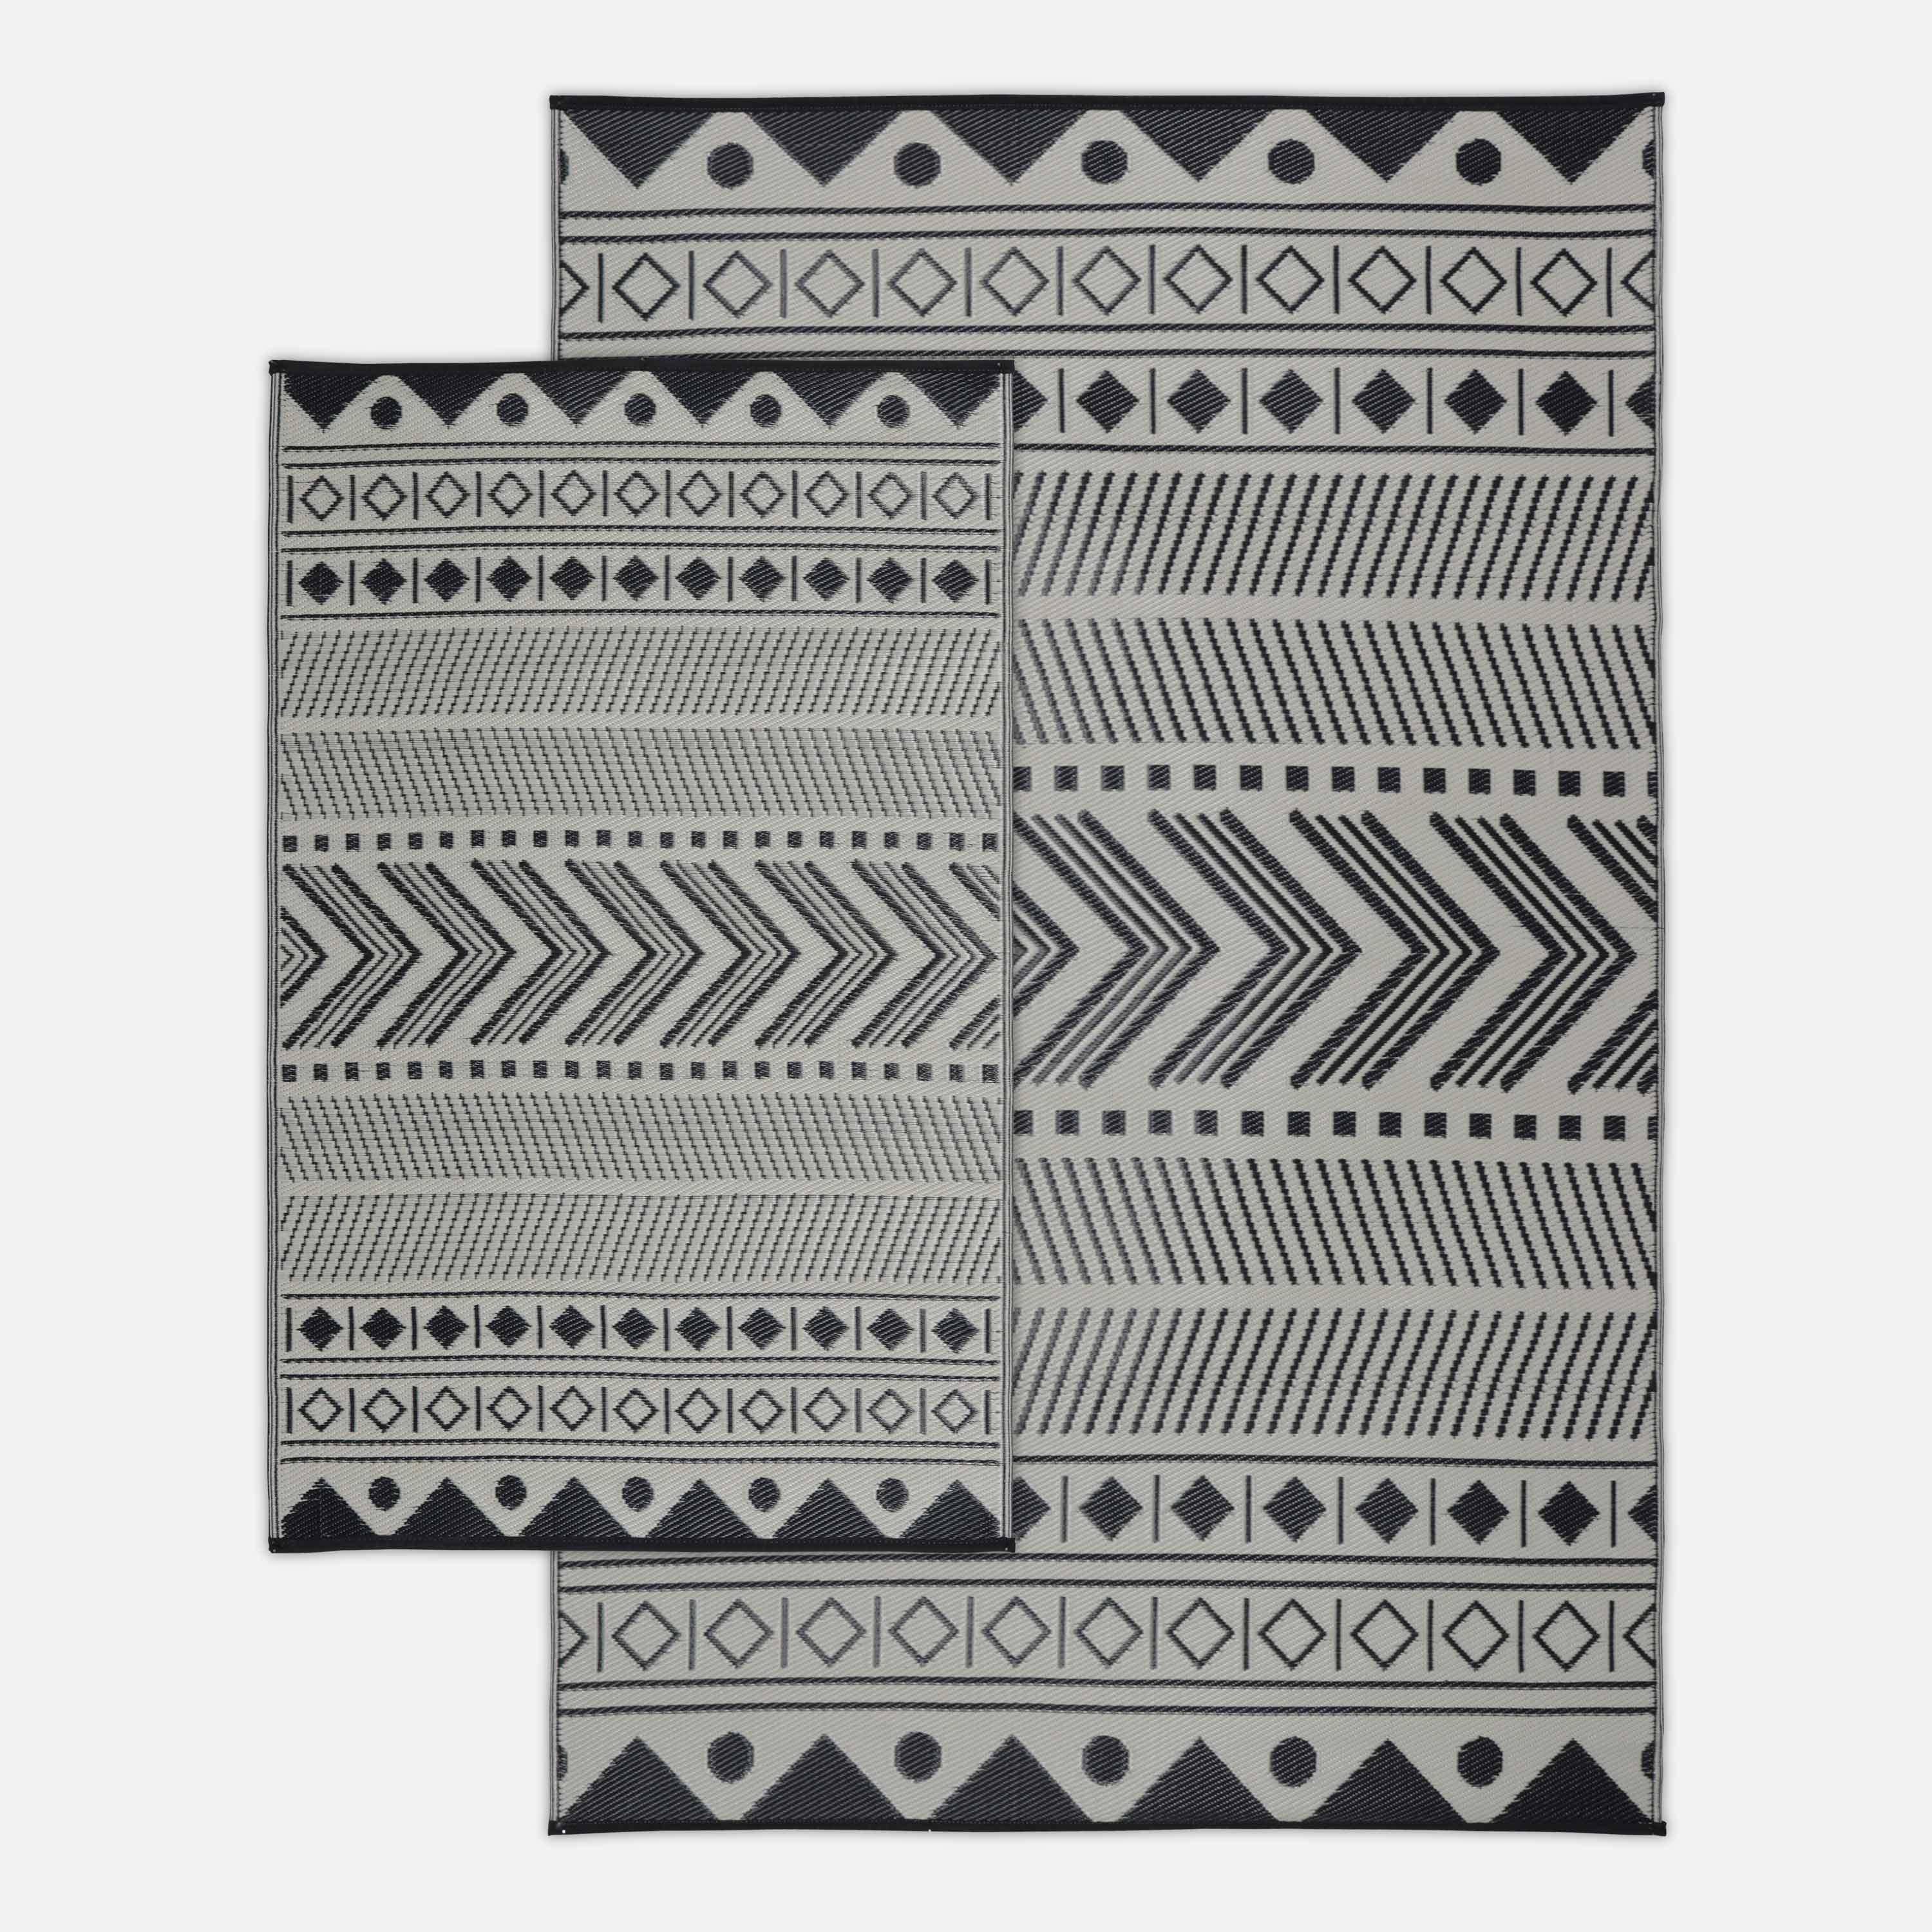 Tapete exterior 120x180cm Bamako - Rectangular, padrão étnico preto / bege, quadriculado, reversível, interior / exterior Photo5